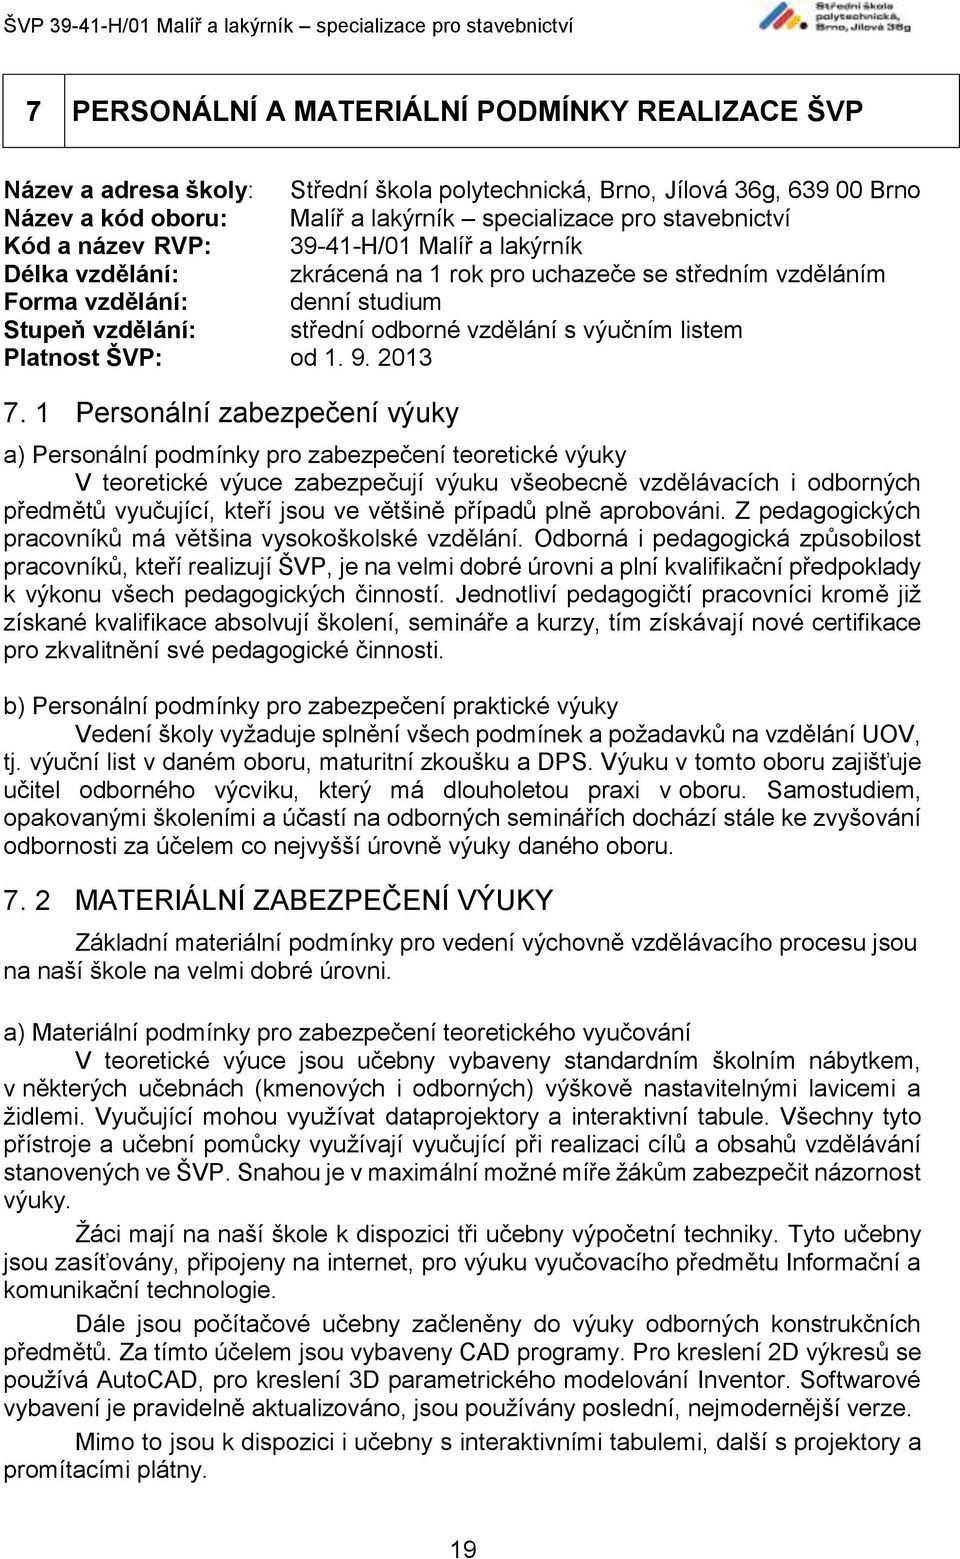 Platnost ŠVP: od 1. 9. 2013 7.